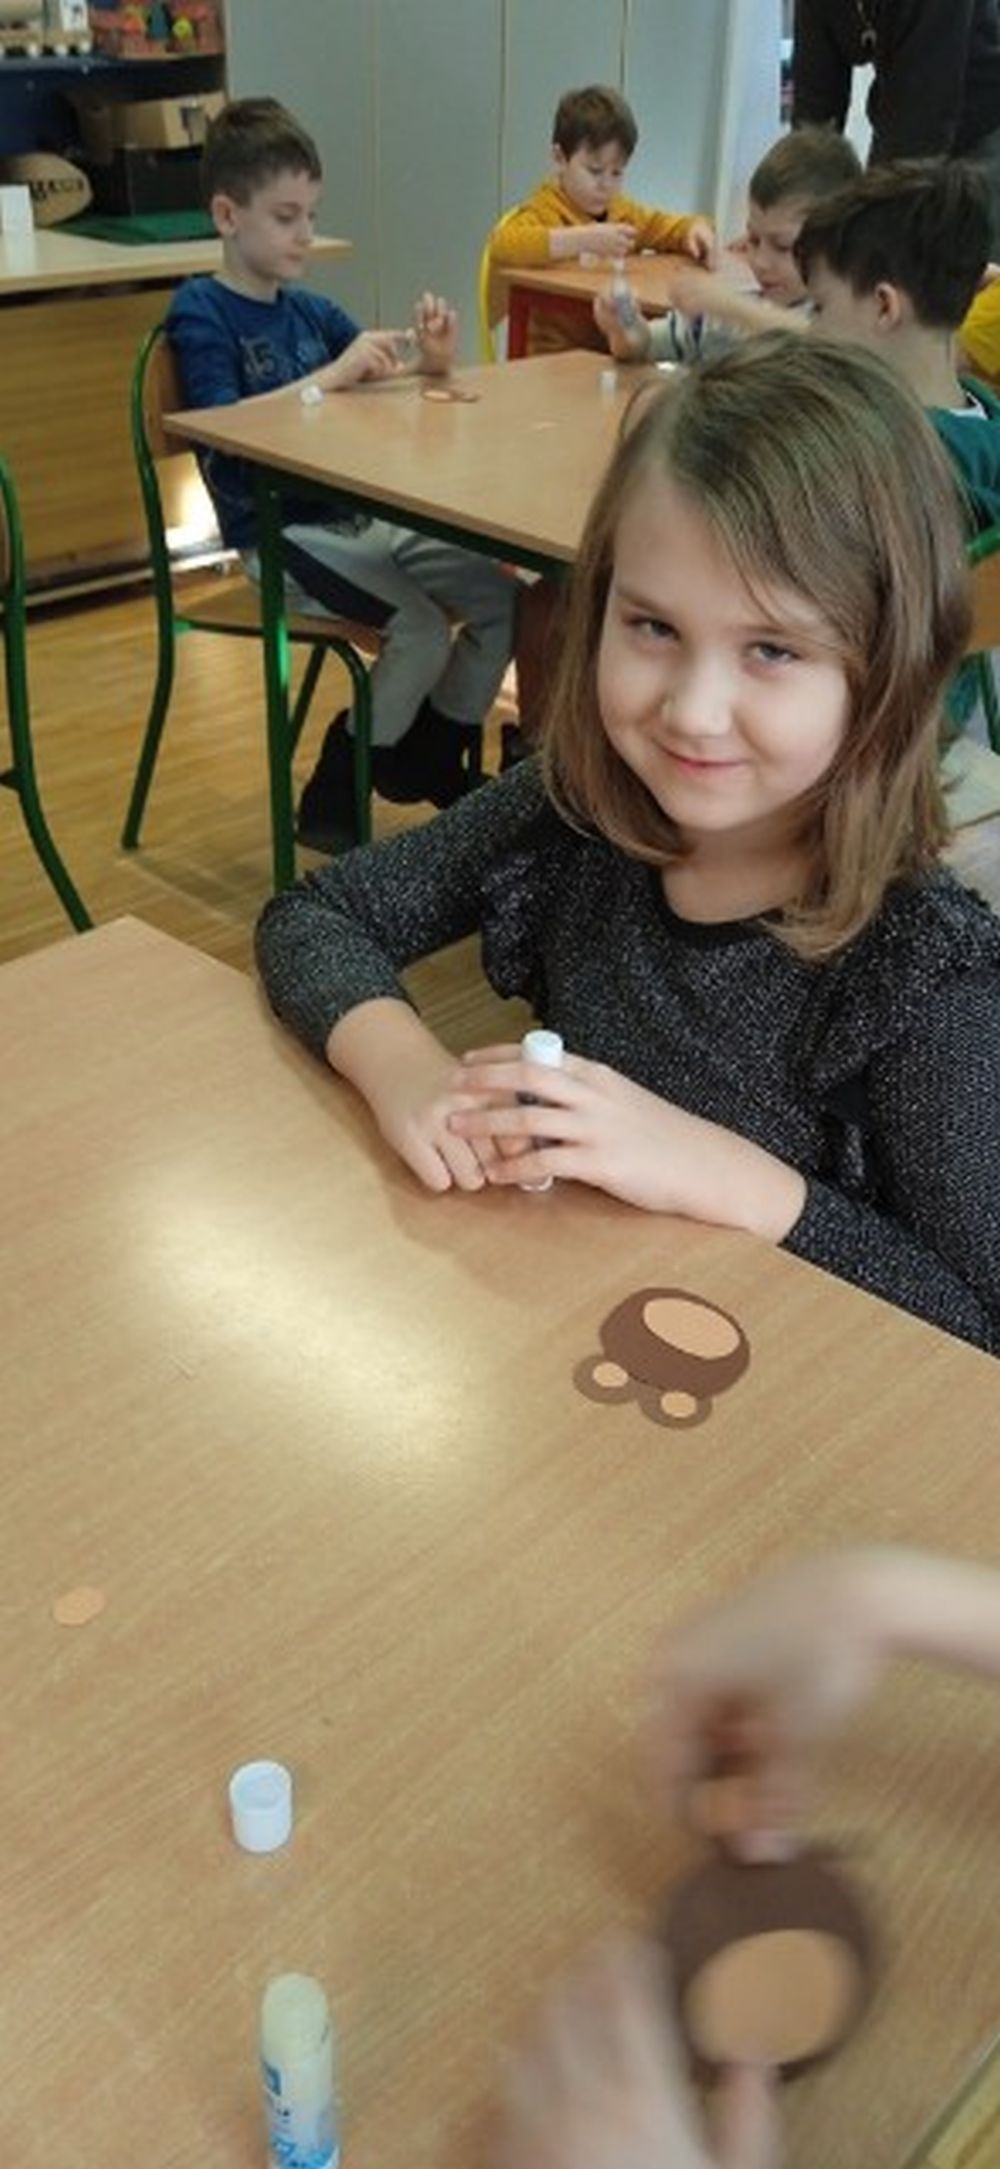 Na pierwszym planie widać dziewczynkę siedzącą przy stoliku na którym leży papierowy miś, w tle inne dzieci siedzące przy stolikach robiące papierowe misie